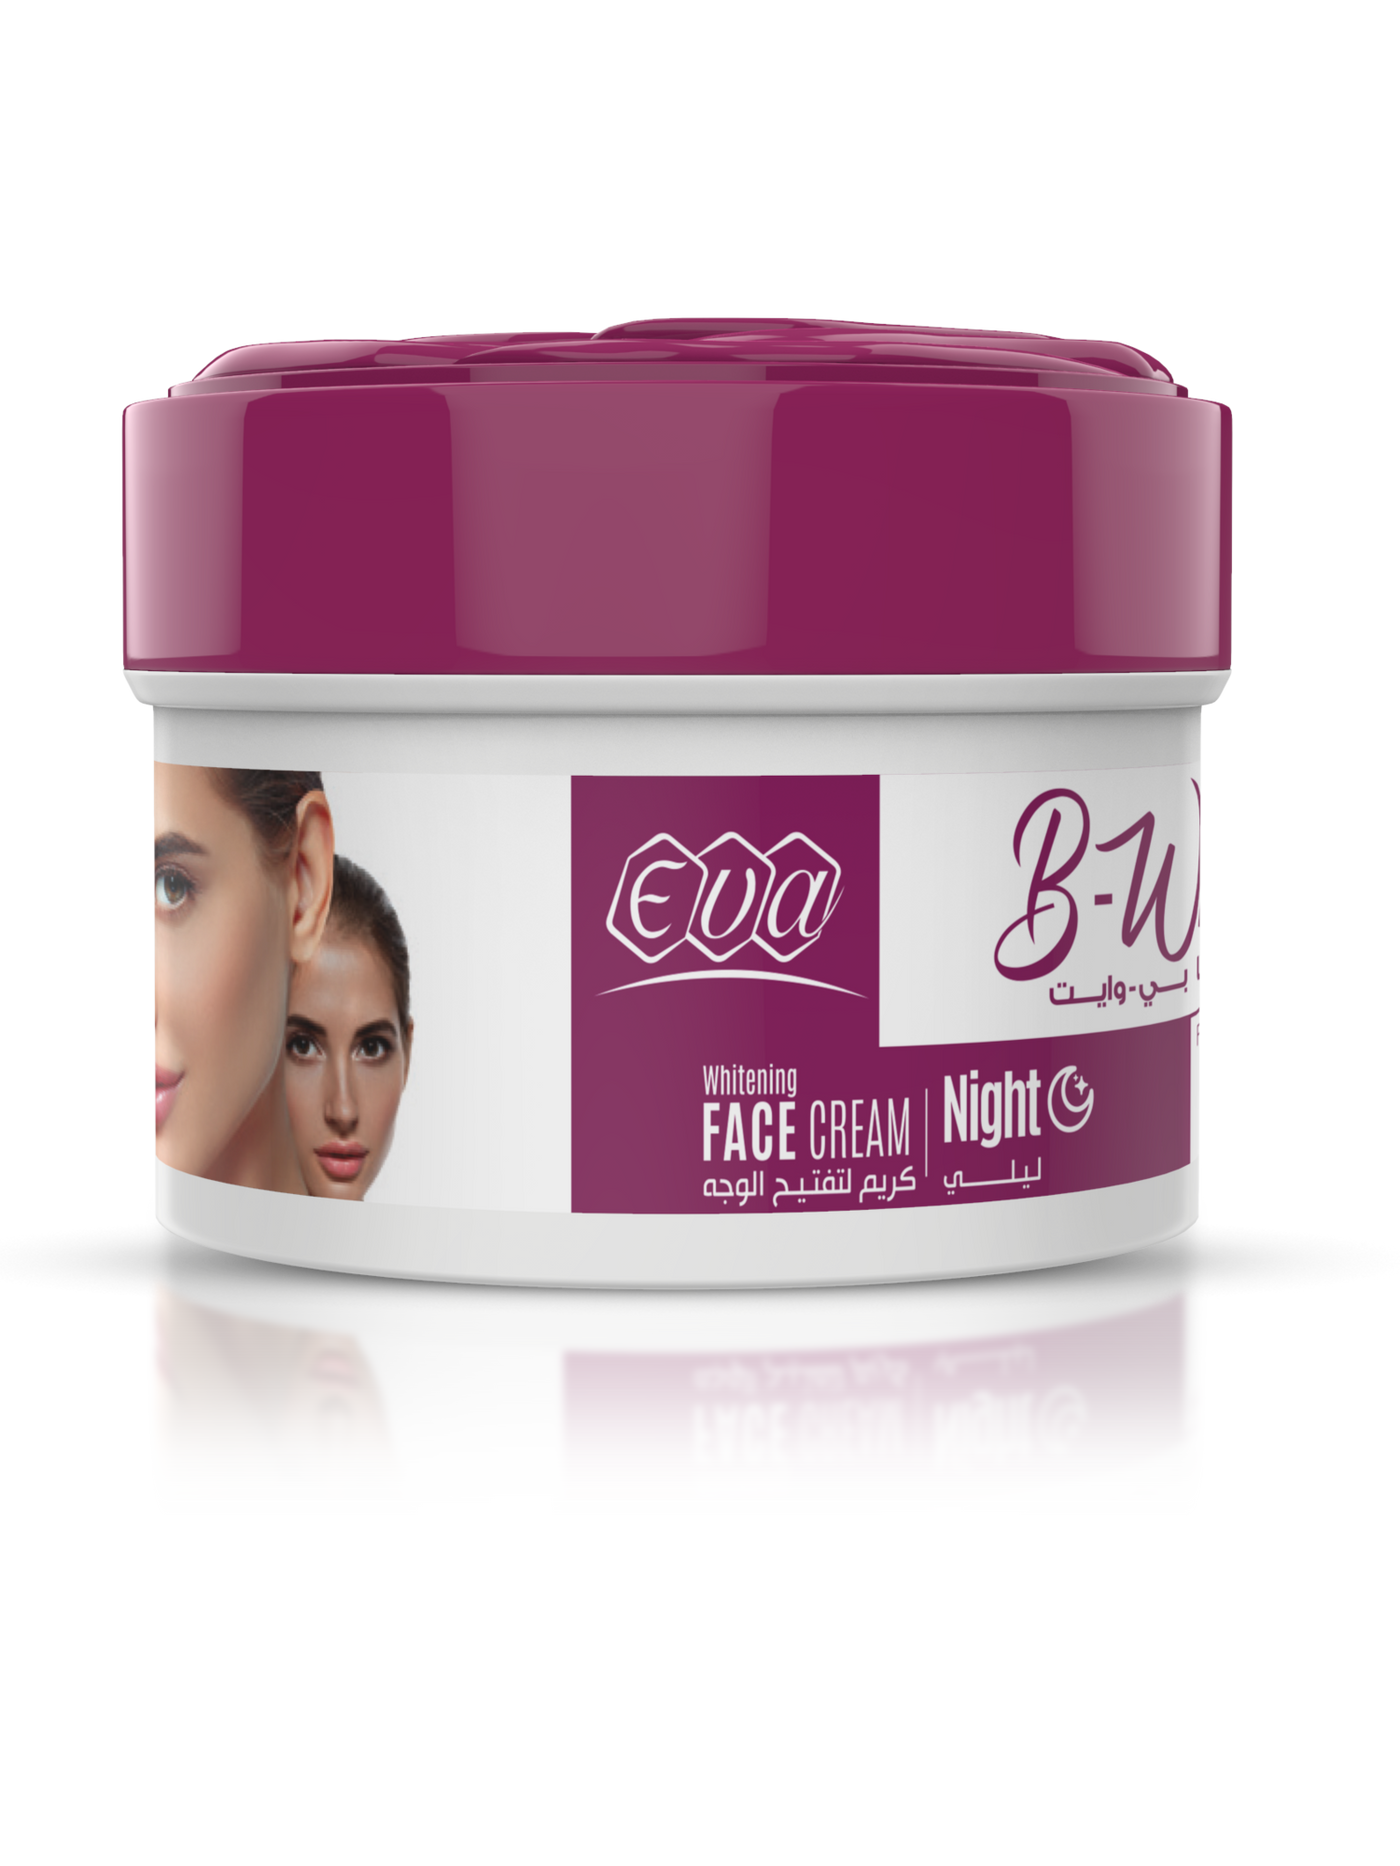 Eva B-White Night Whitening Cream 18 gm